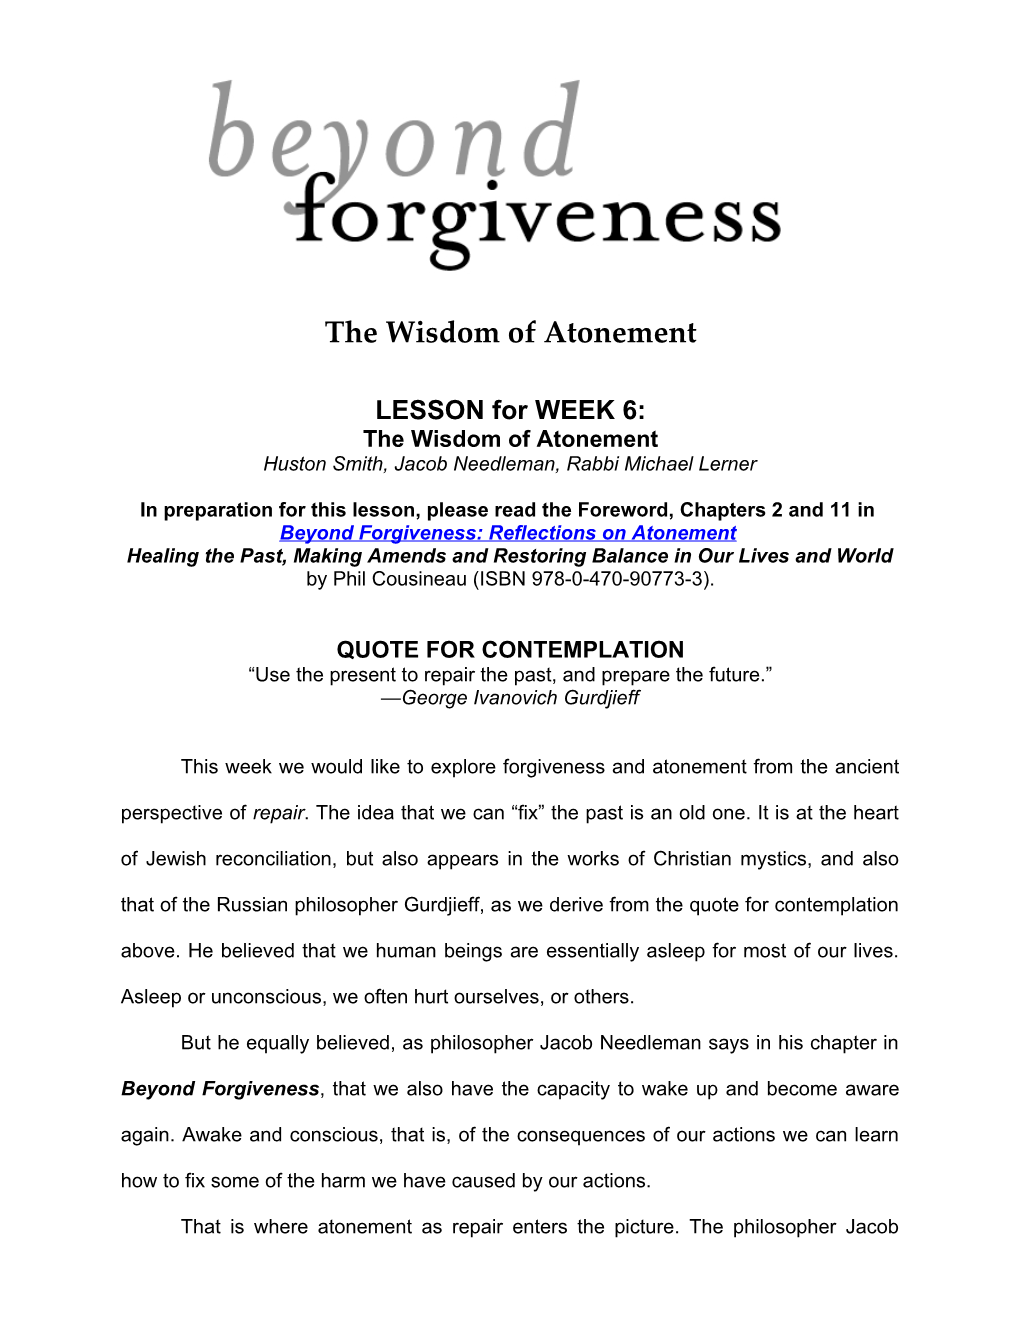 The Wisdom of Atonement